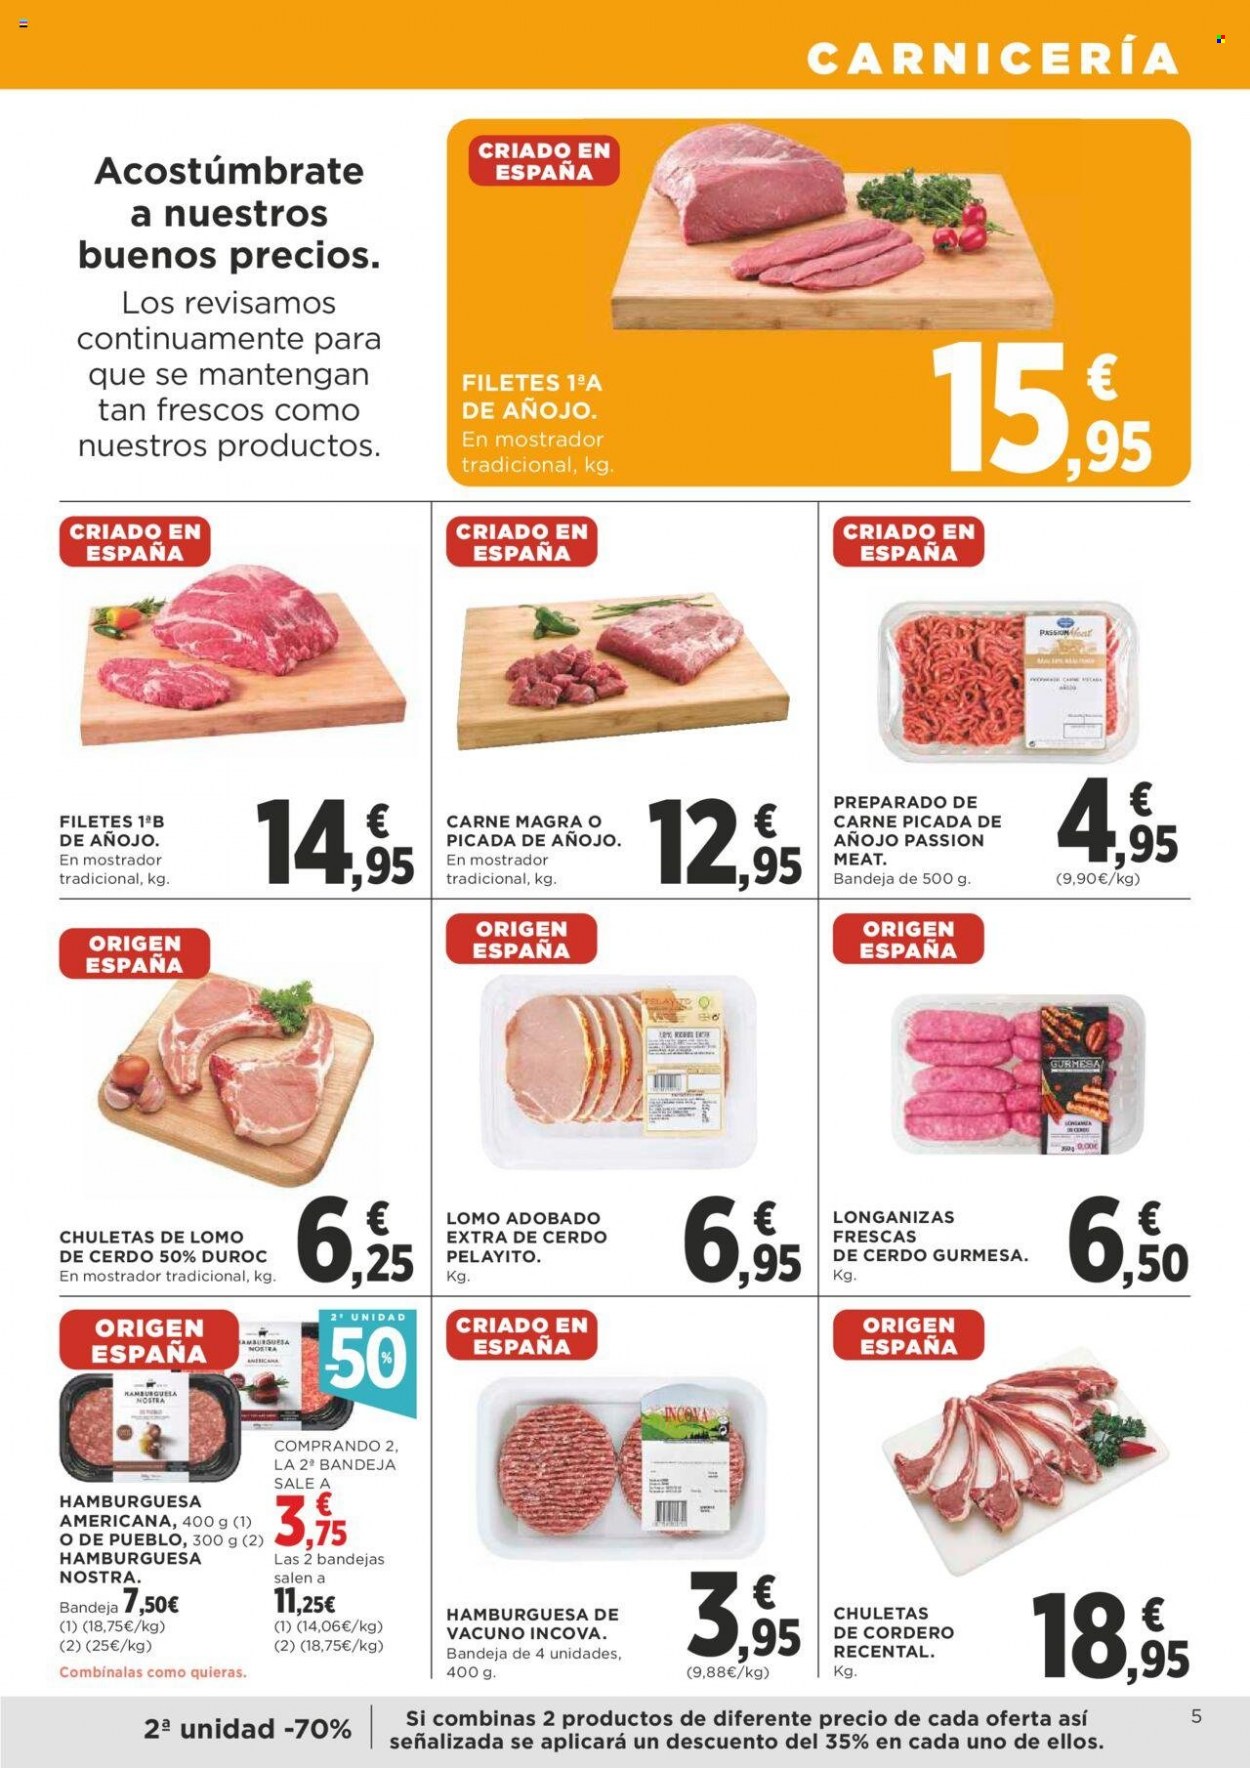 thumbnail - Folleto actual Supercor supermercados - 18/05/23 - 31/05/23 - Ventas - lomo de cerdo, lomo adobado, preparado de carne, carne de añojo, hamburguesa, carne picada, cordero. Página 5.